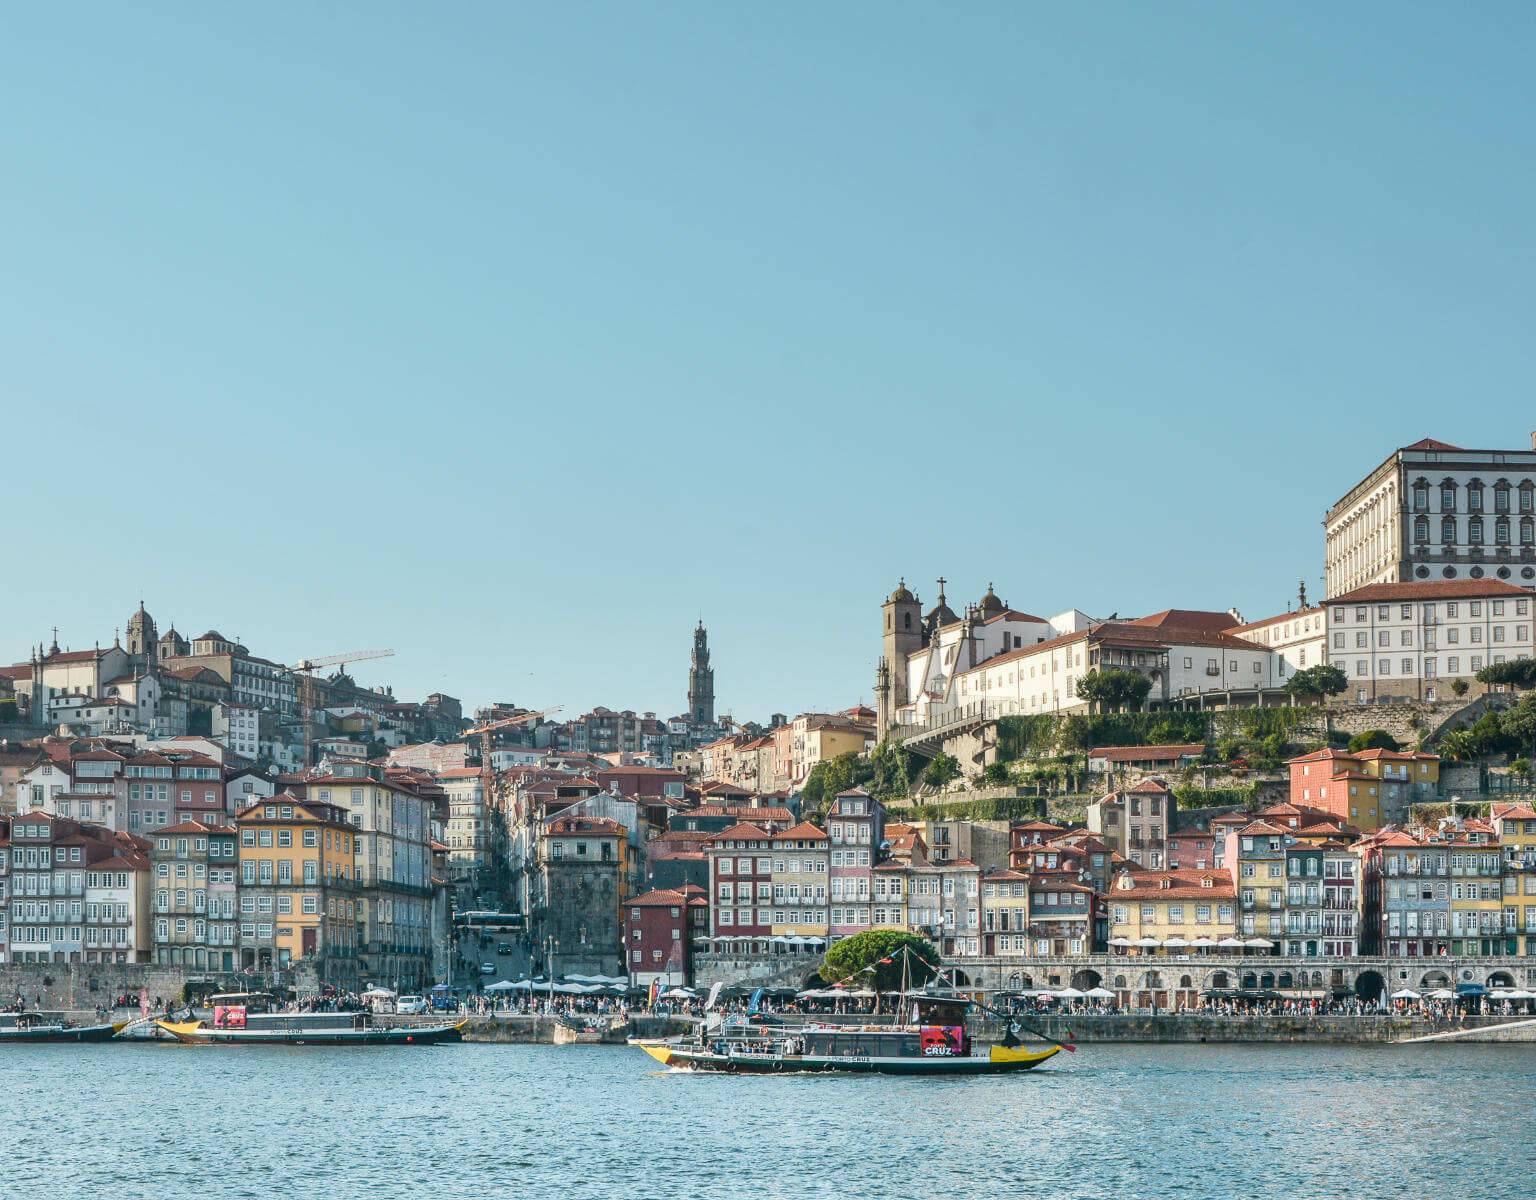 Der Blick über den Fluss auf die Stadtkulisse von Porto.